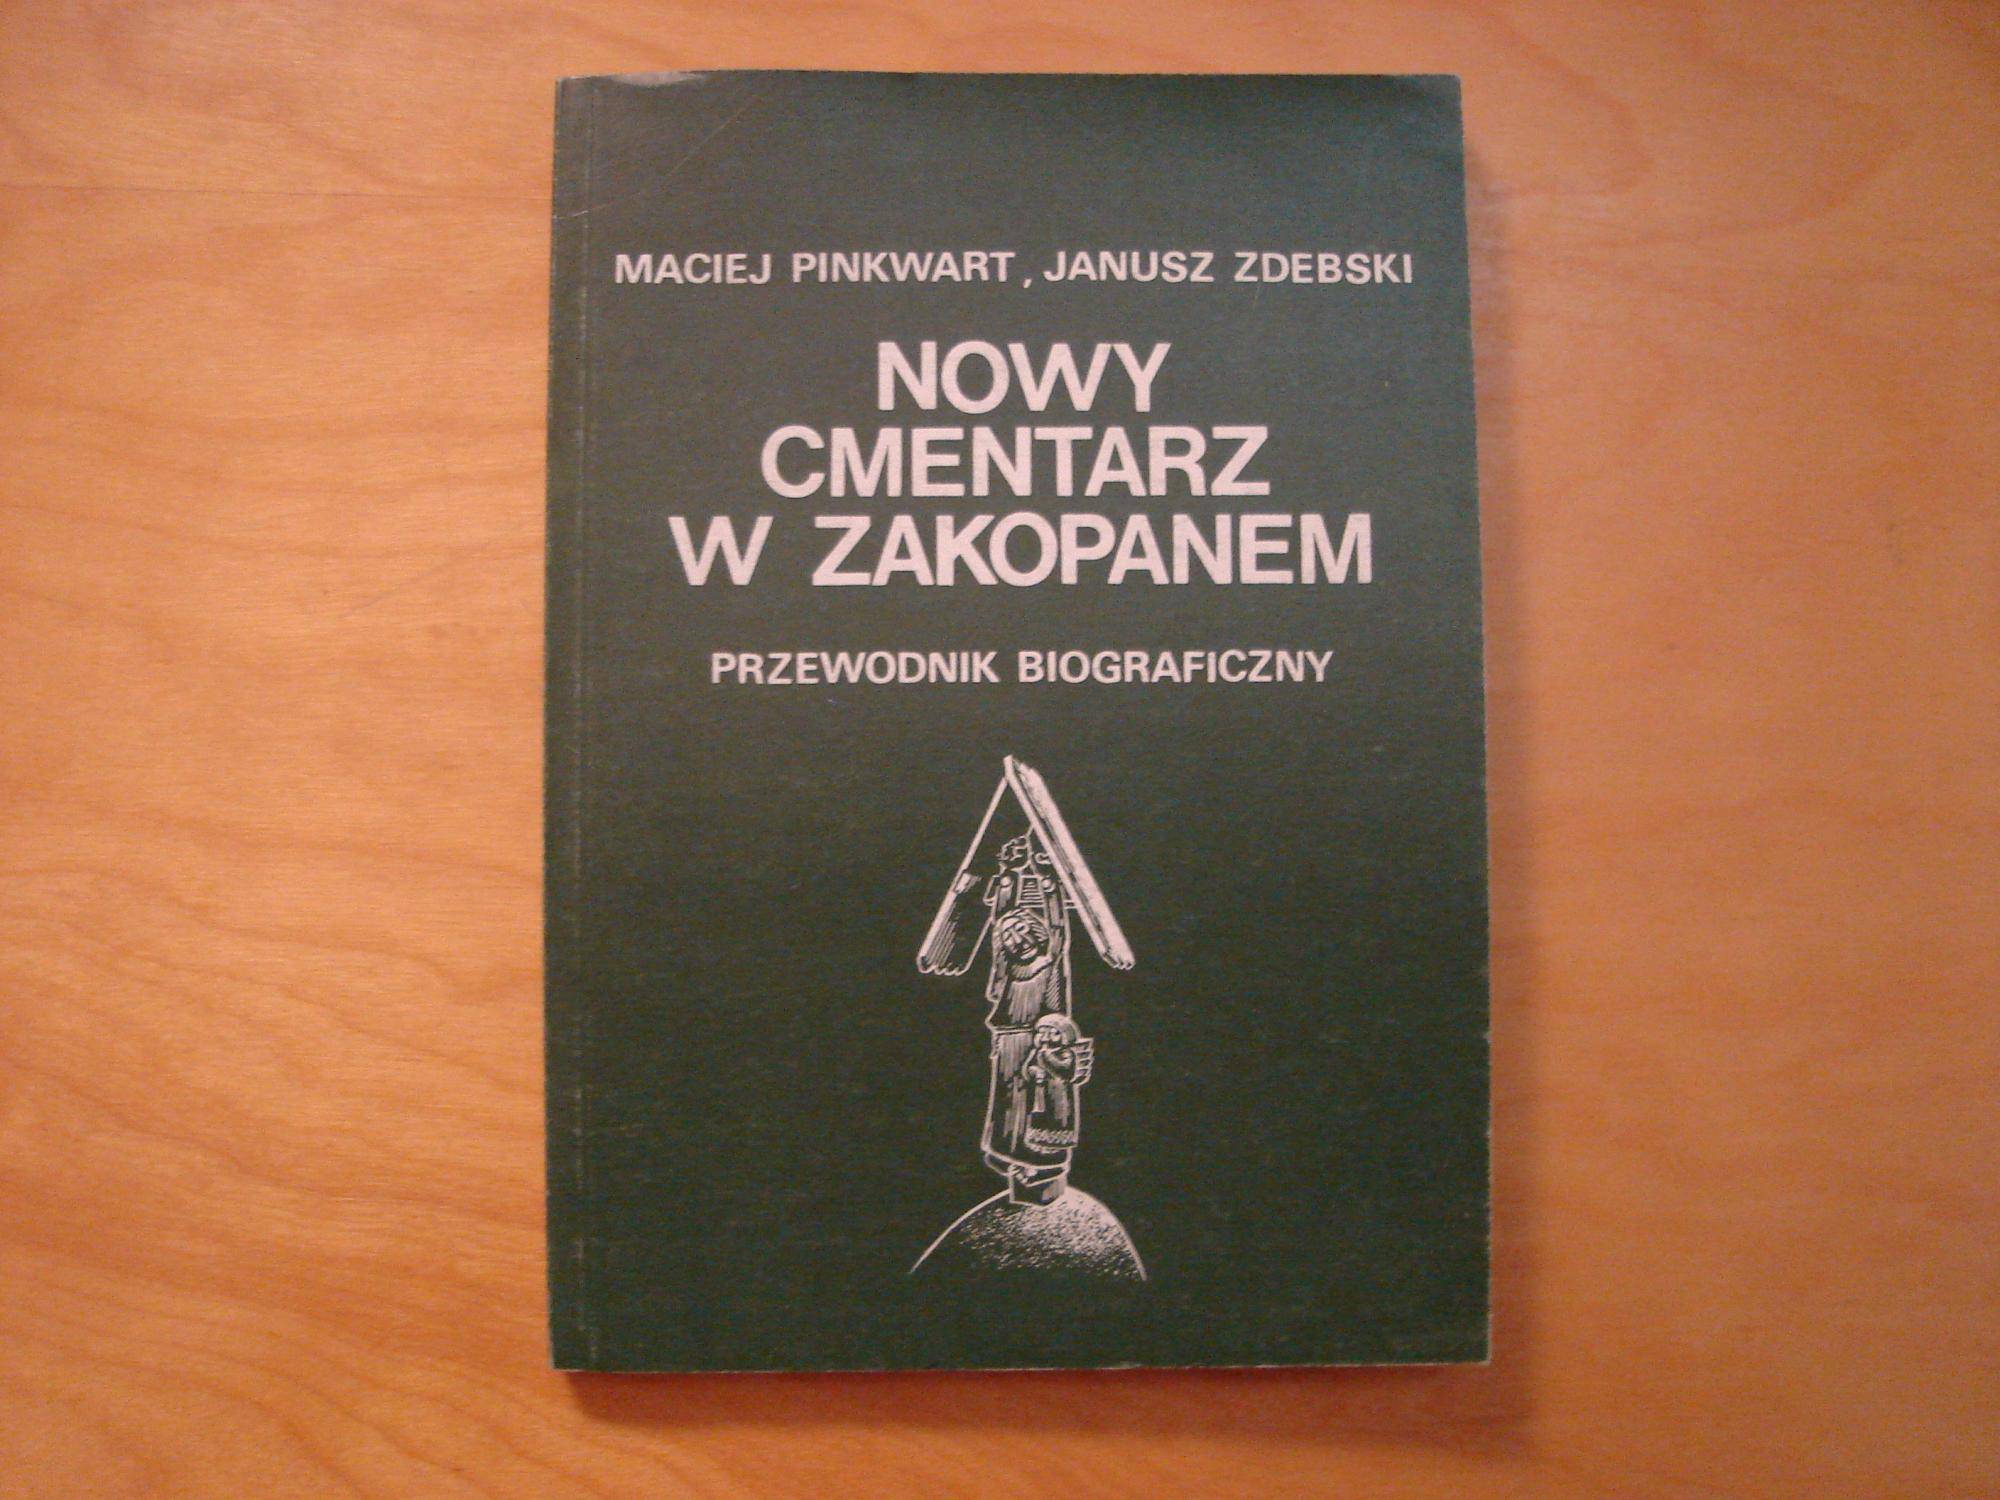 Nowy cmentarz w Zakopanem. Przewodnik biograficzny - Maciej Pinkwart, Janusz Zdebski